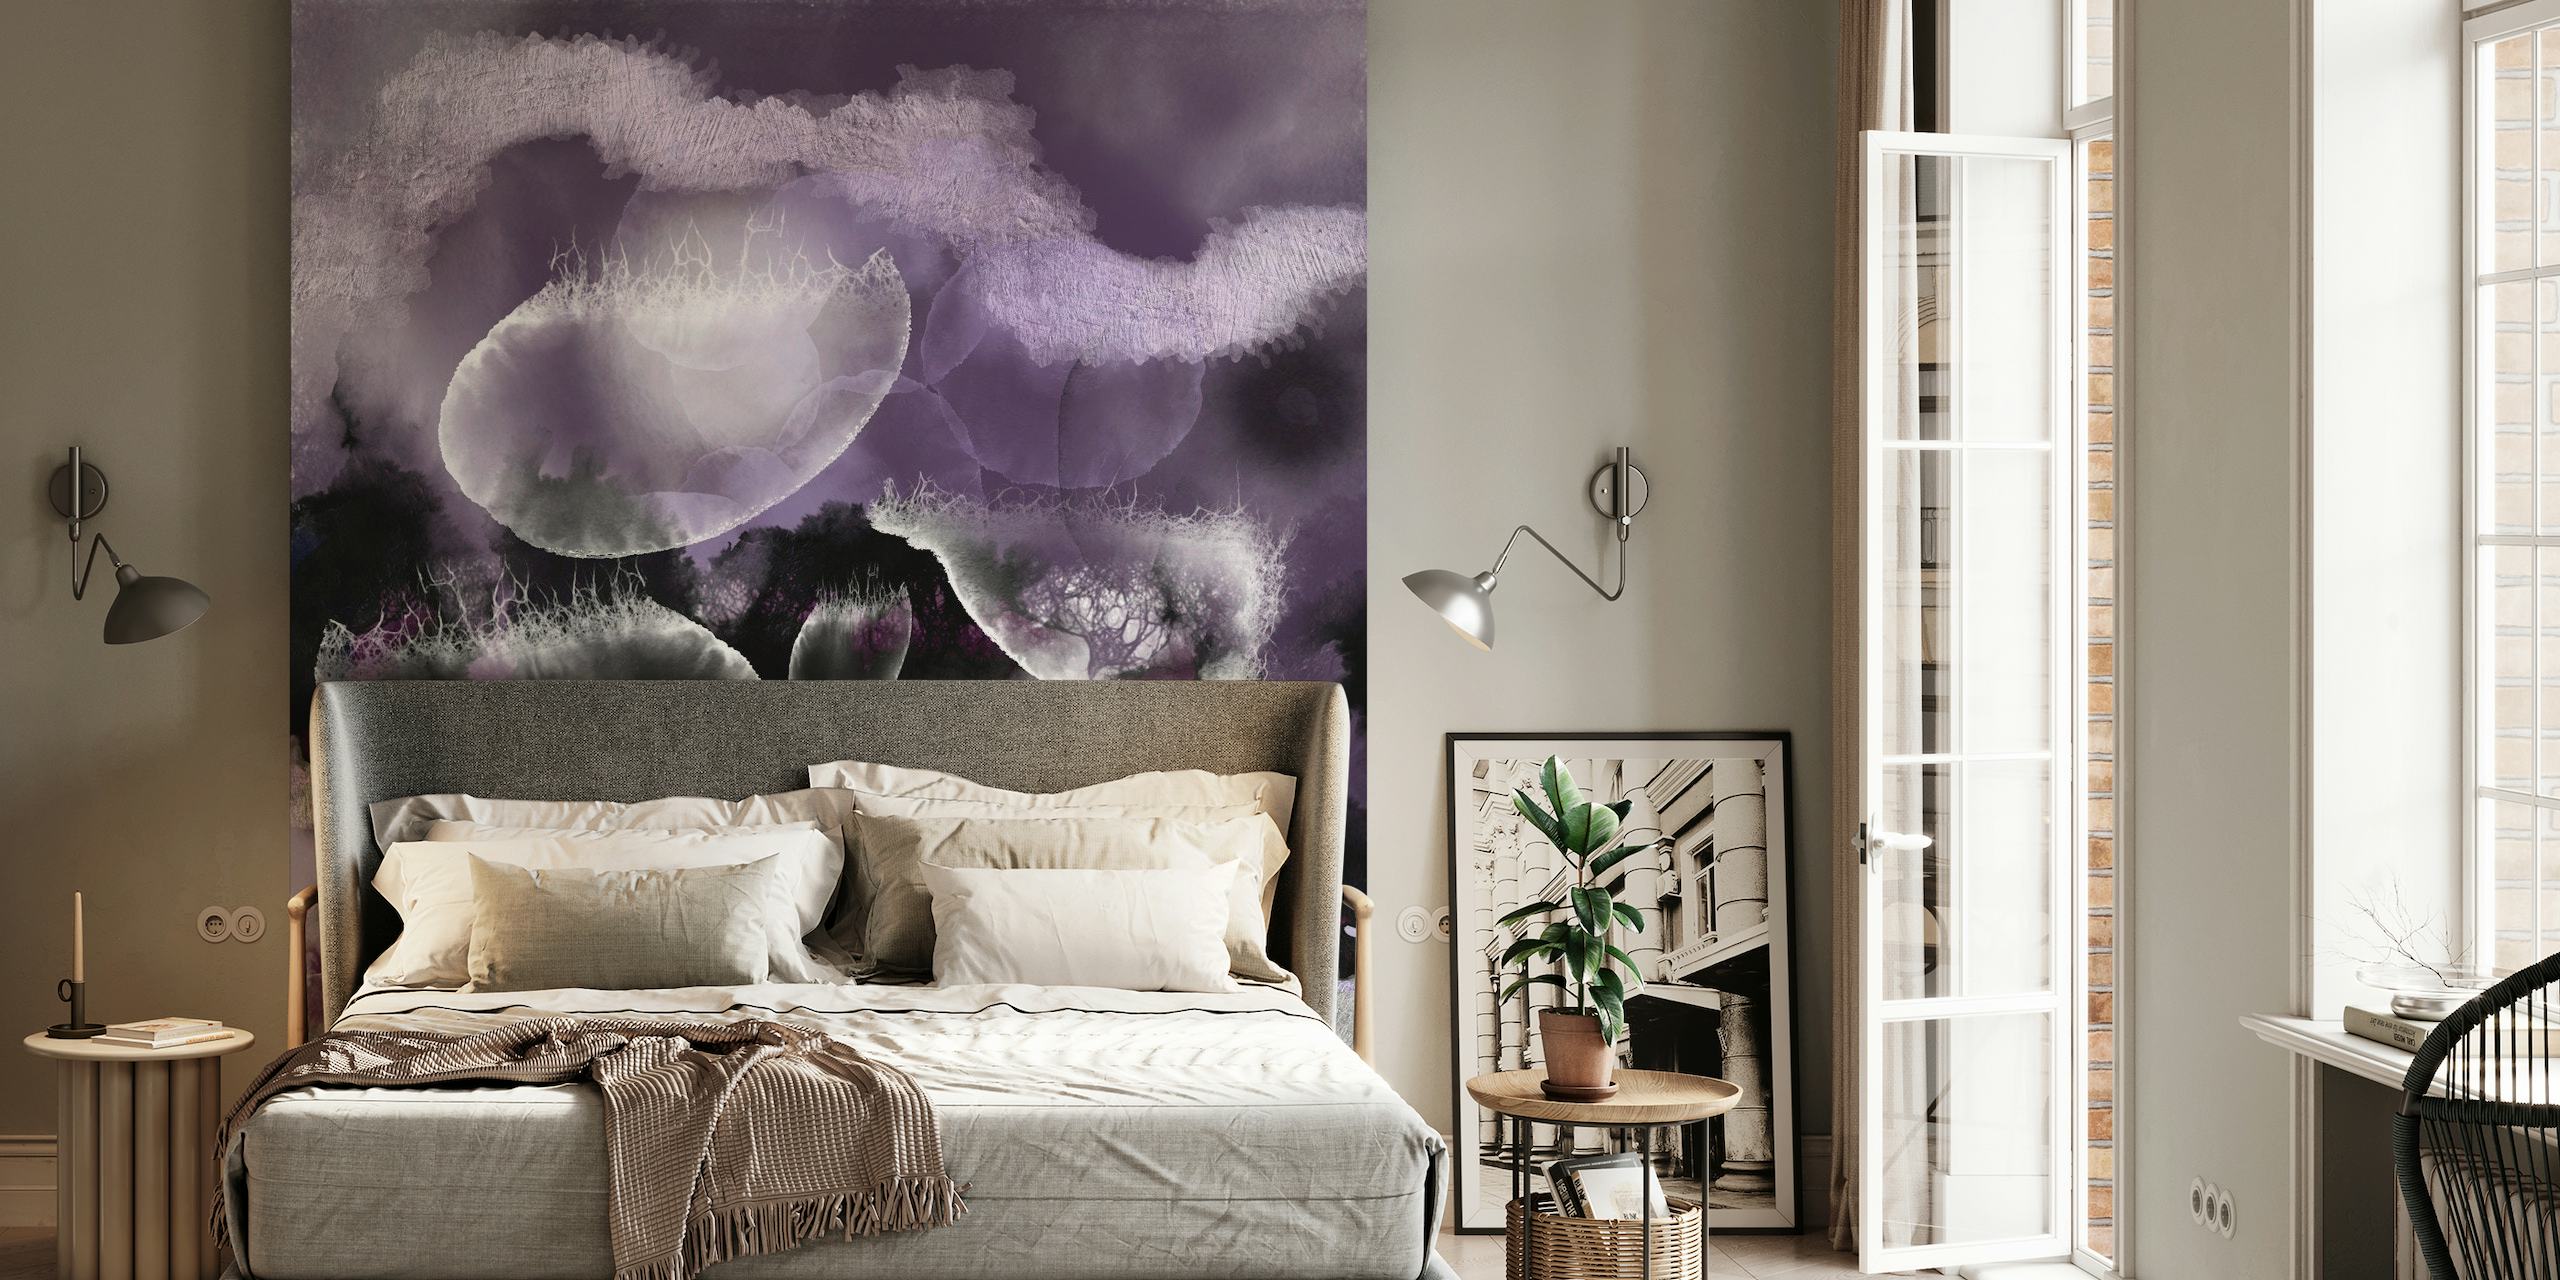 Abstrakti valtameren inspiroima seinämaalaus violetin sävyin eteerisillä vedenalaisilla kuvioilla